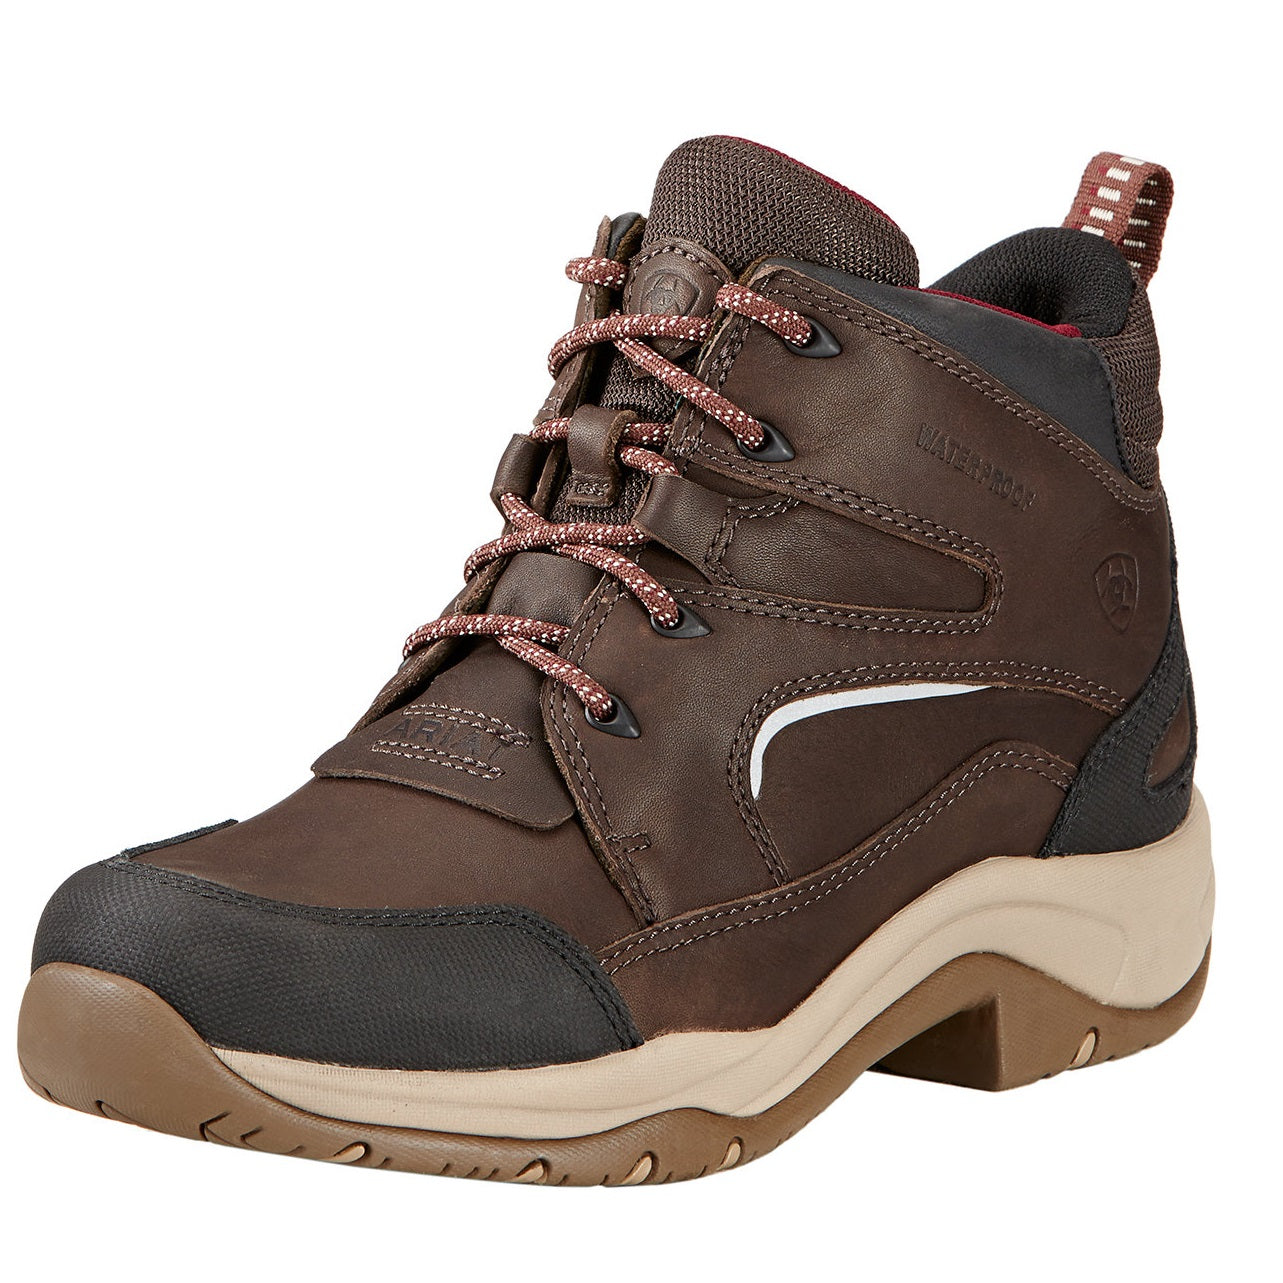 ARIAT Telluride II Boots - Womens Waterproof H20 - Dark Brown